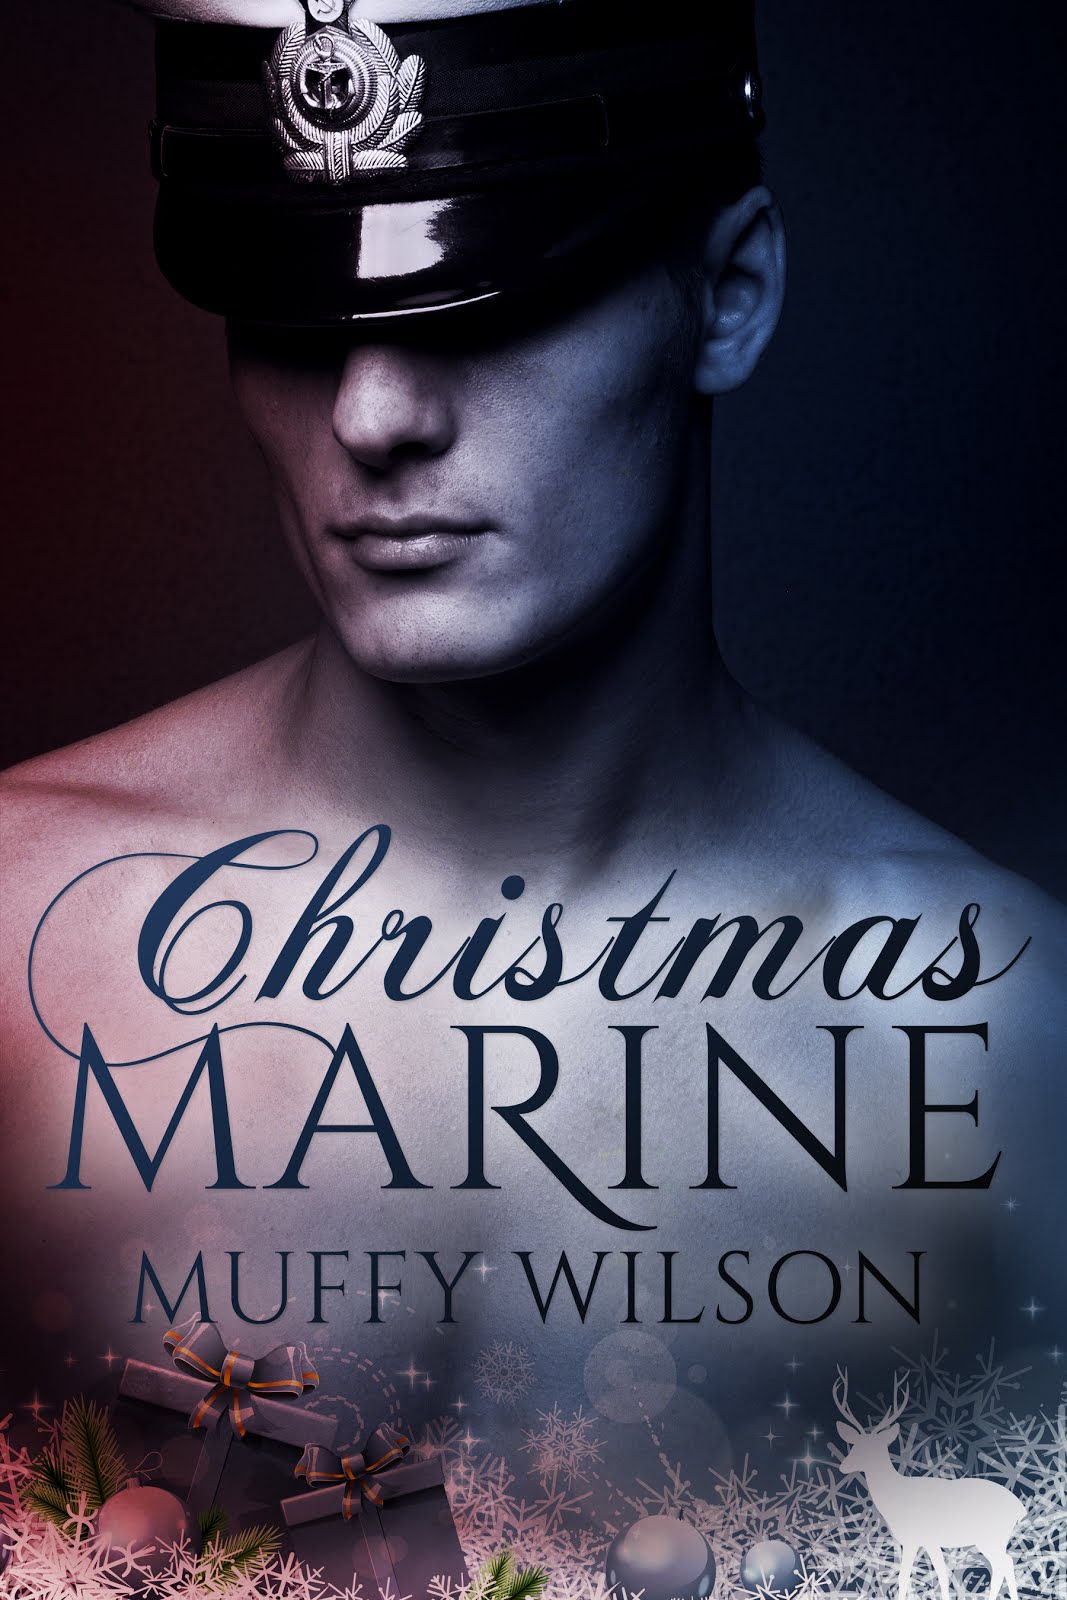 Carpe Christmas Marine!